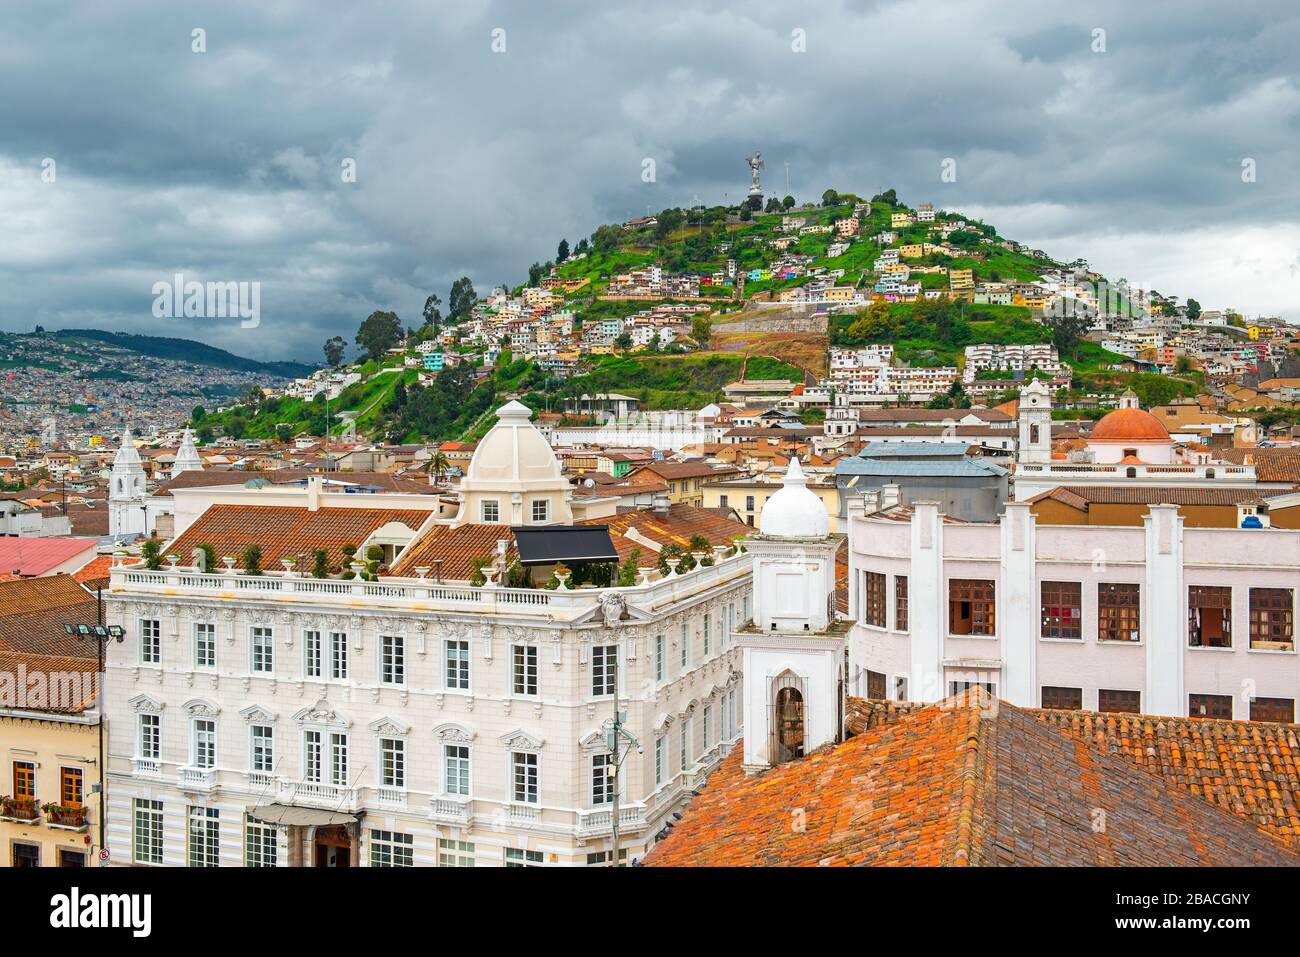 Paesaggio urbano di Quito con il centro storico della città in stile coloniale architettura e la collina Panecillo con la Vergine di Quito, Ecuador. Foto Stock